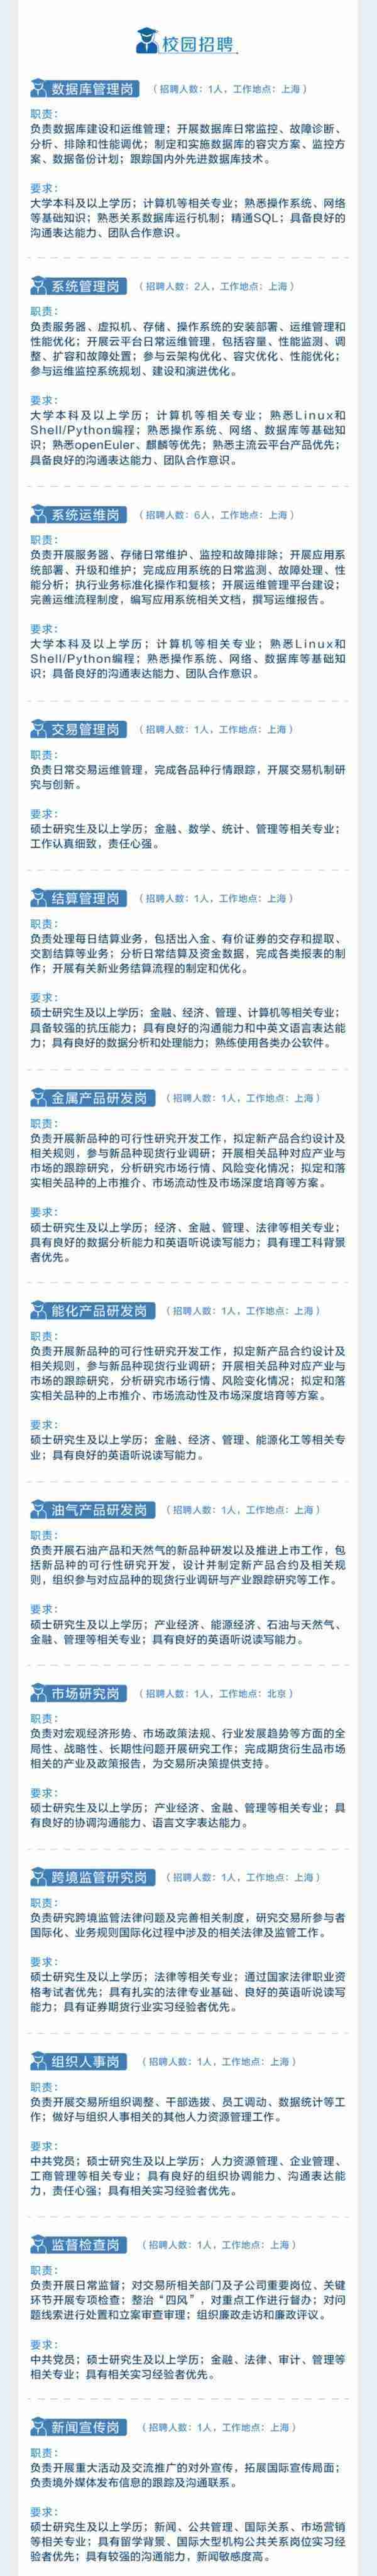 上海期货交易所上海国际能源交易中心招聘26名工作人员，7月31日前报名